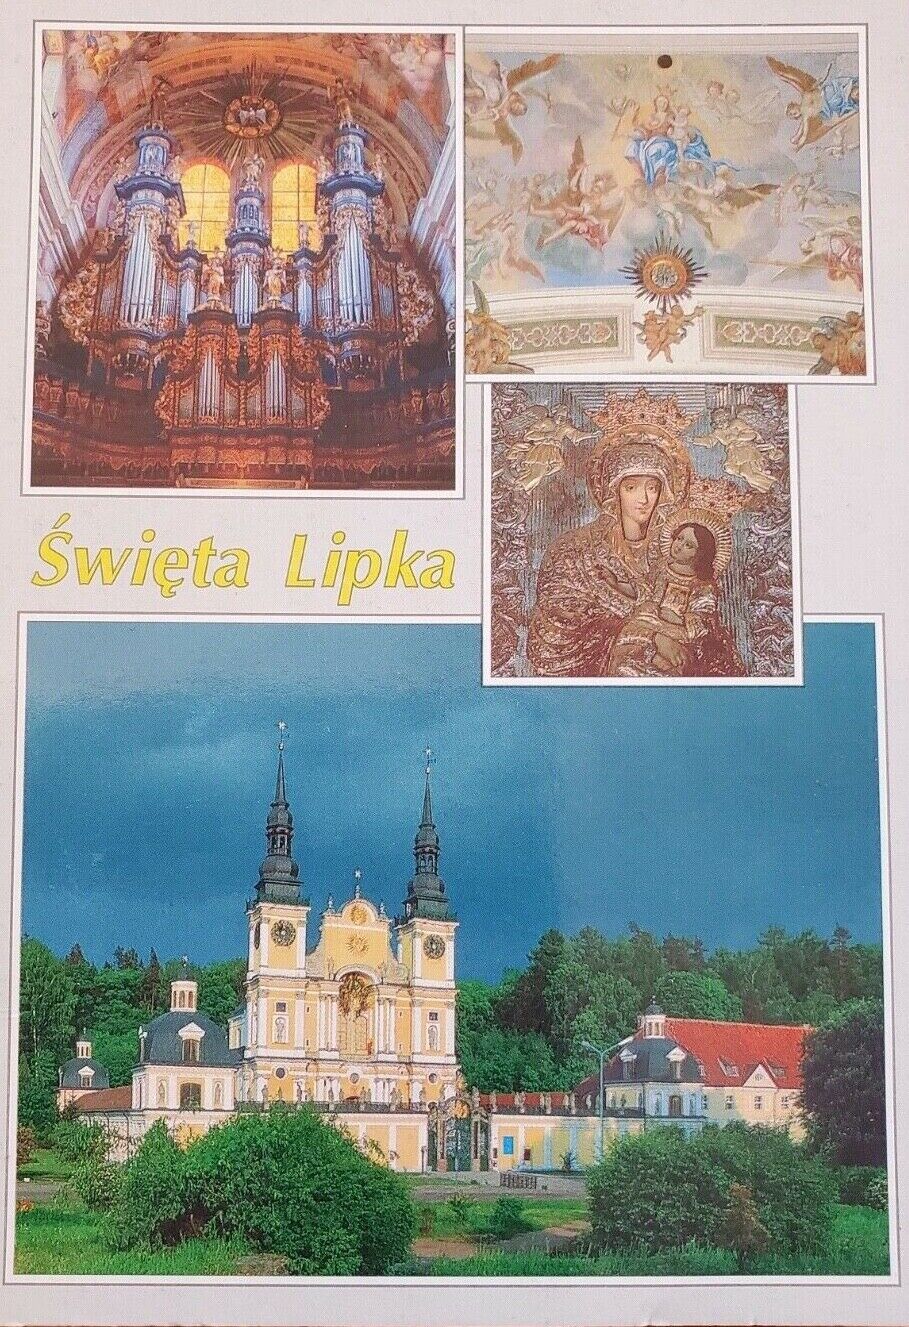 Swieta Lipka Montage Poland 1990's Vintage Postcard 